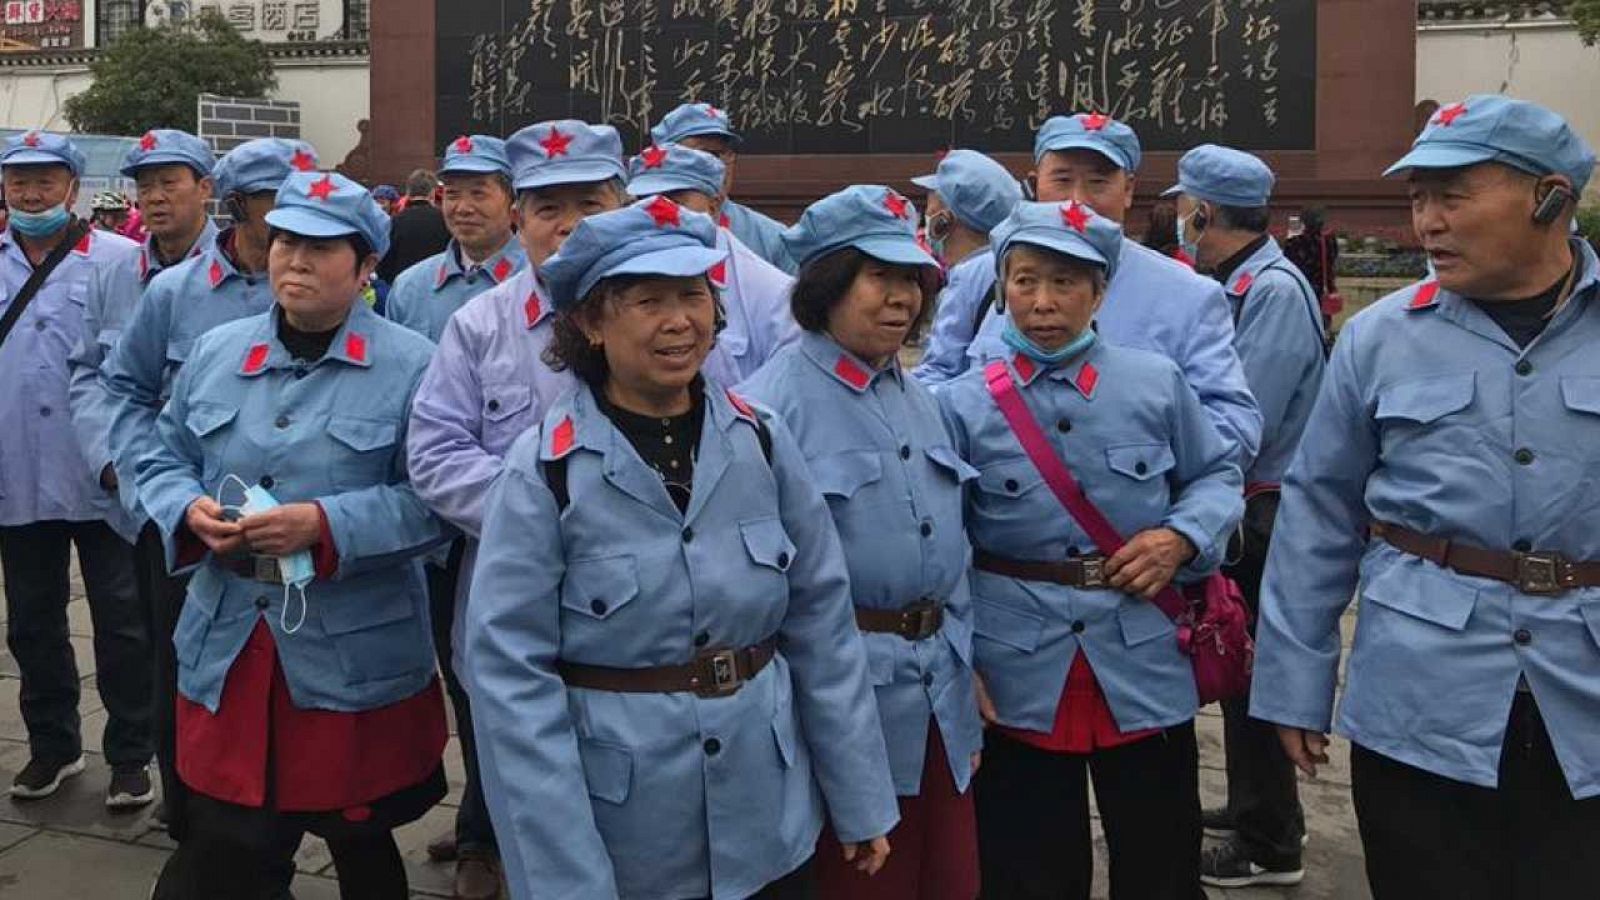 Jubilados vestidos con el uniforme del Ejército Rojo en Zunyi, China. Foto: Mavi Doñate, corresponsal de TVE en Pekín.